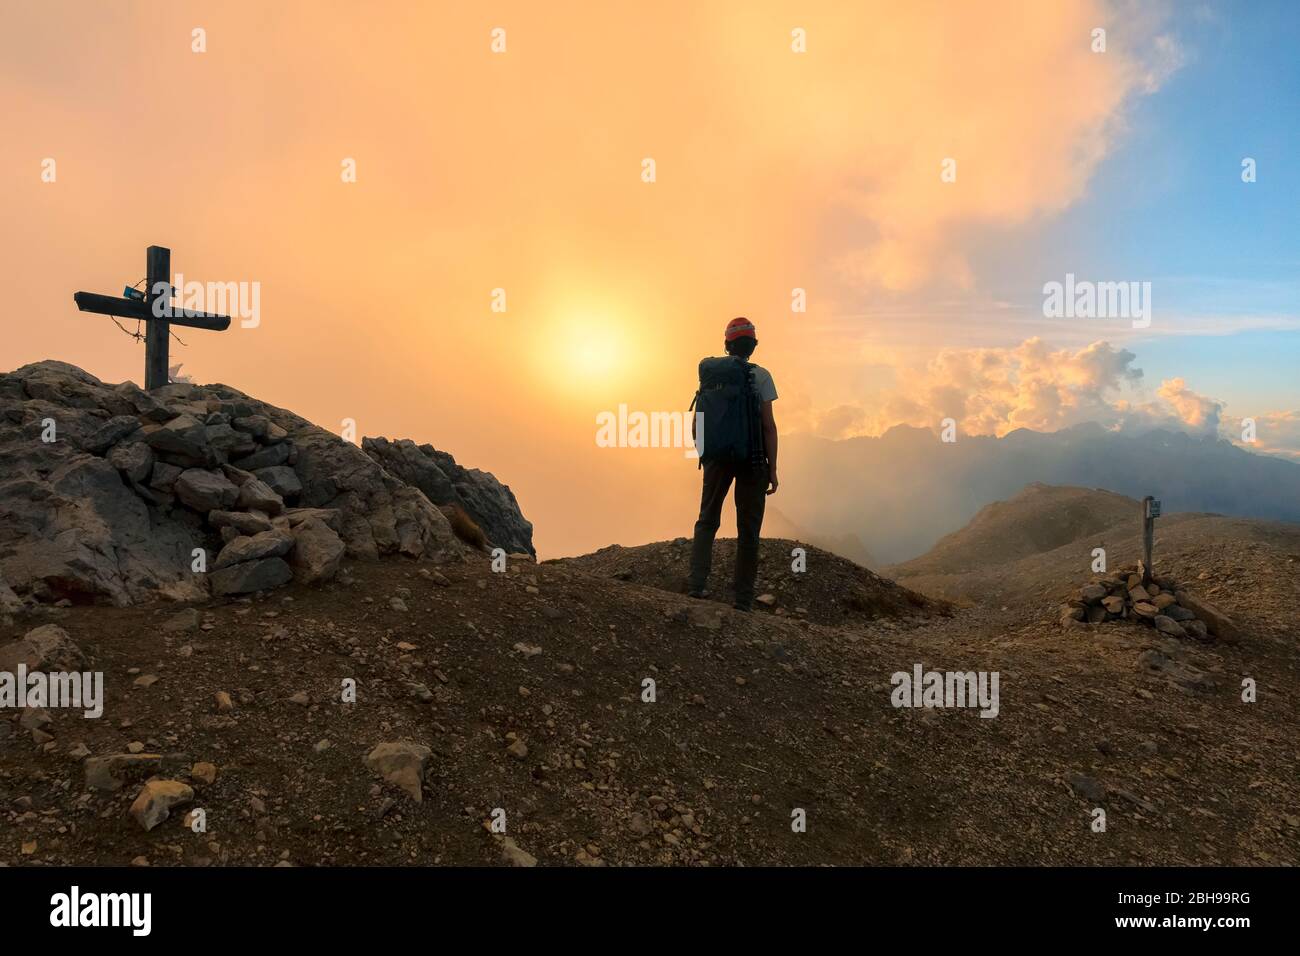 Ein Wanderer übersteht einen wolkigen Sonnenuntergang vom Gipfel der Cima Campagnaccia, Costabella Ridge, Marmolada-Gruppe, Dolomiten, Moena, Fassatal, Trient Provinz, Trentino-Südtirol, Italien. Stockfoto